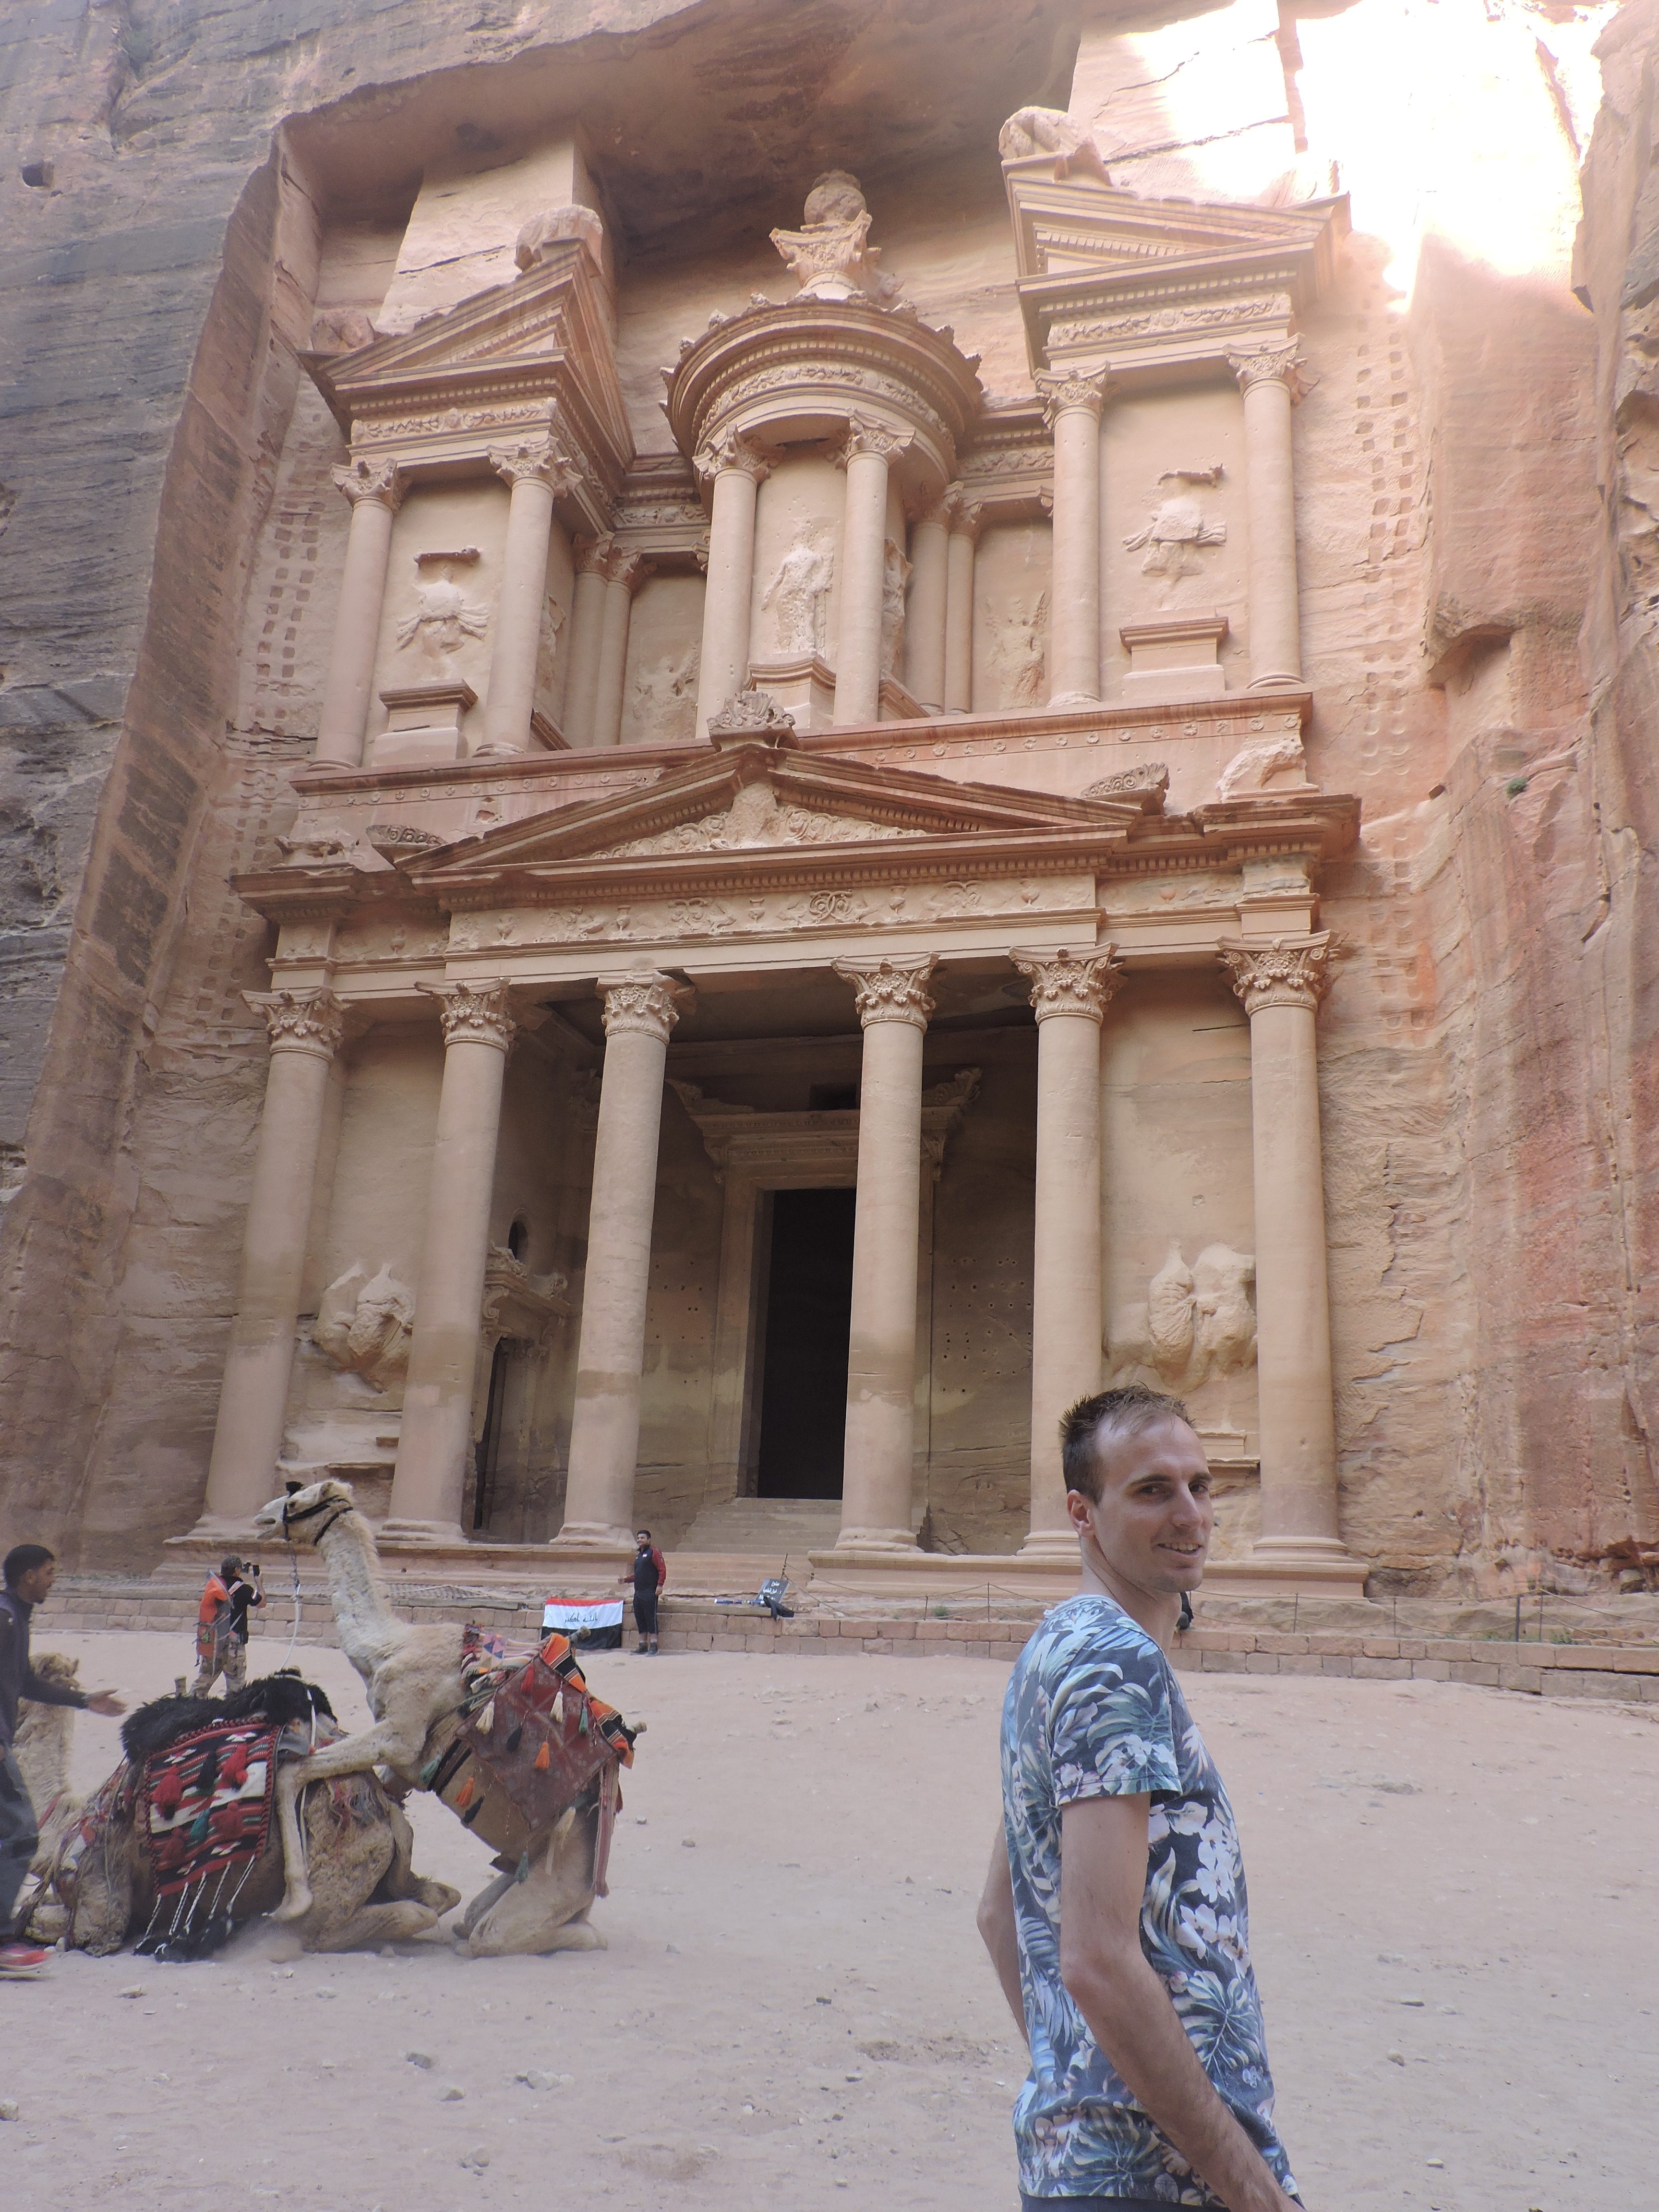 Treasury in Petra met kamelen